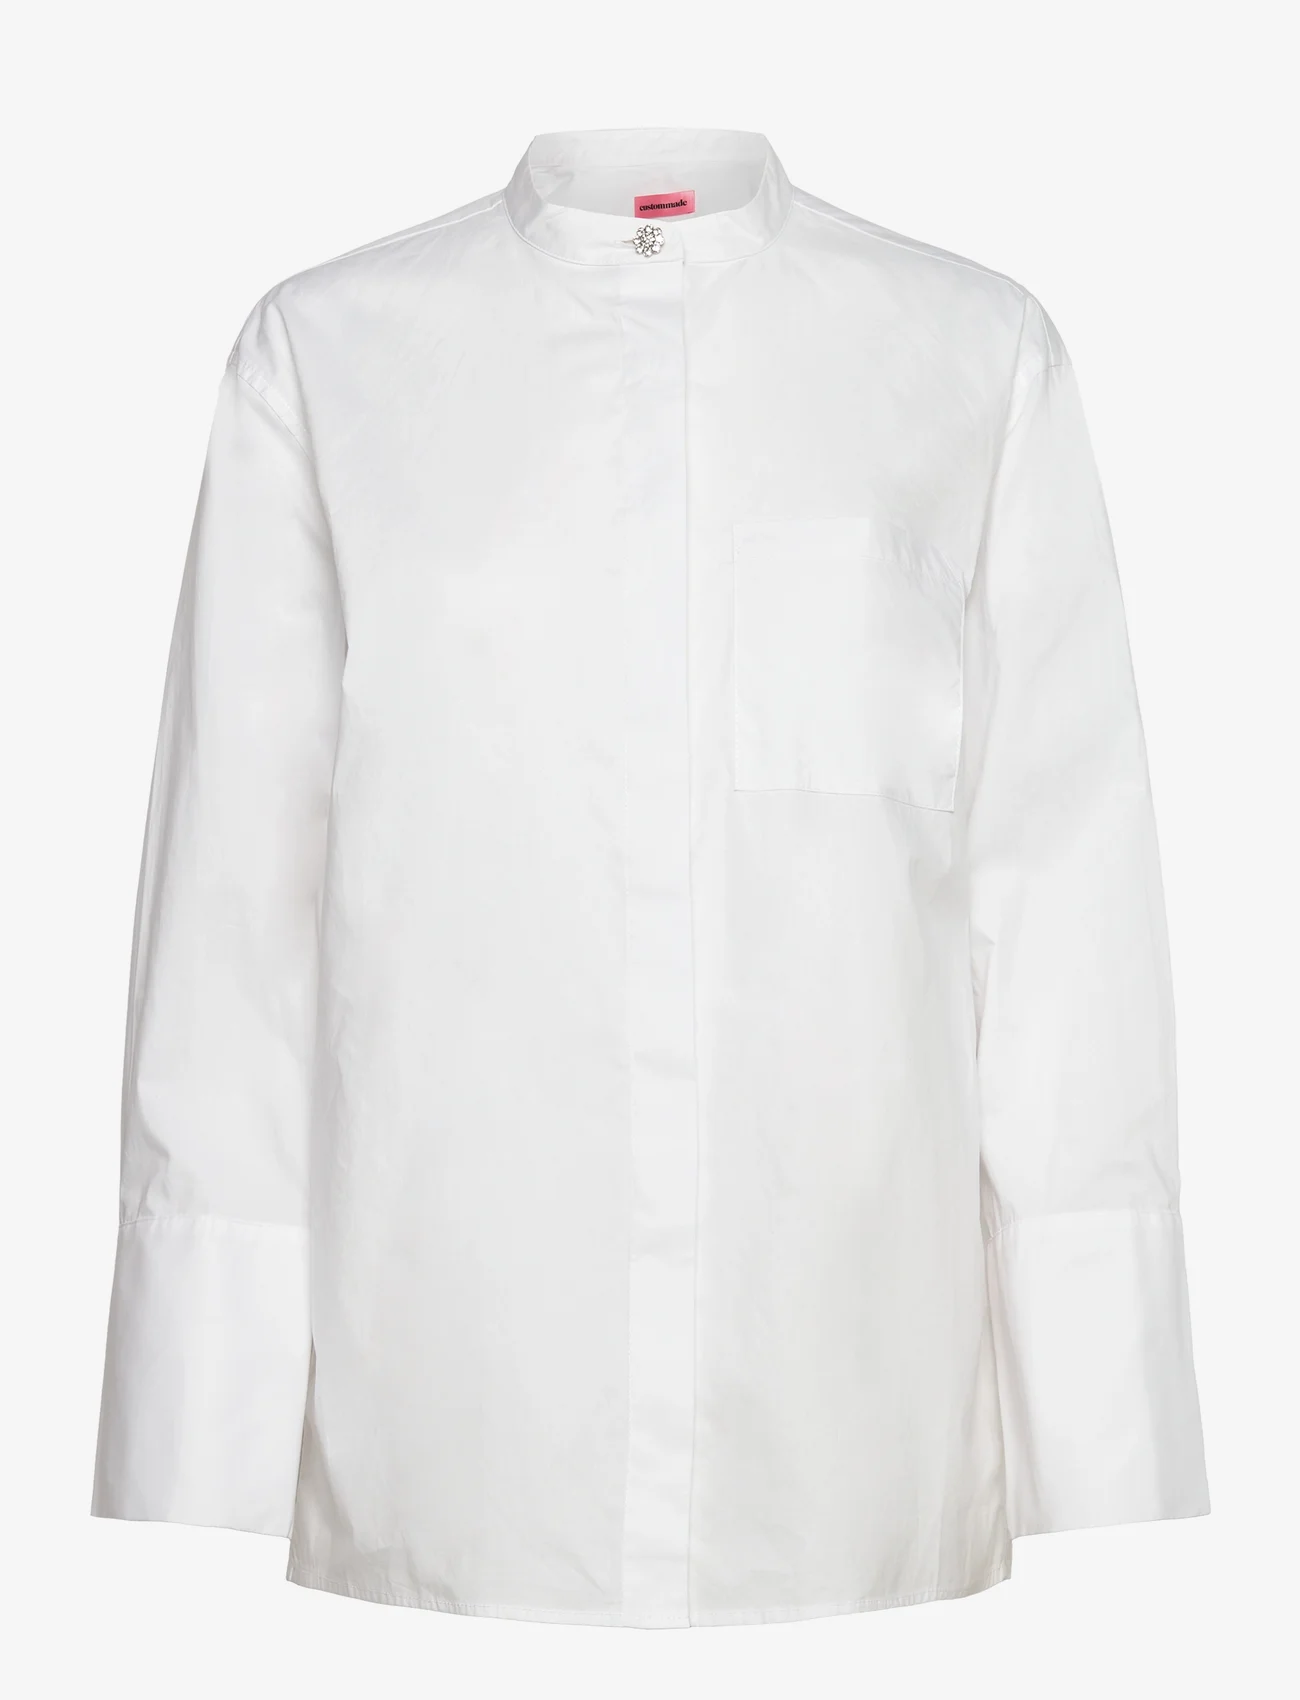 Custommade - Banni - langærmede skjorter - 001 bright white - 0